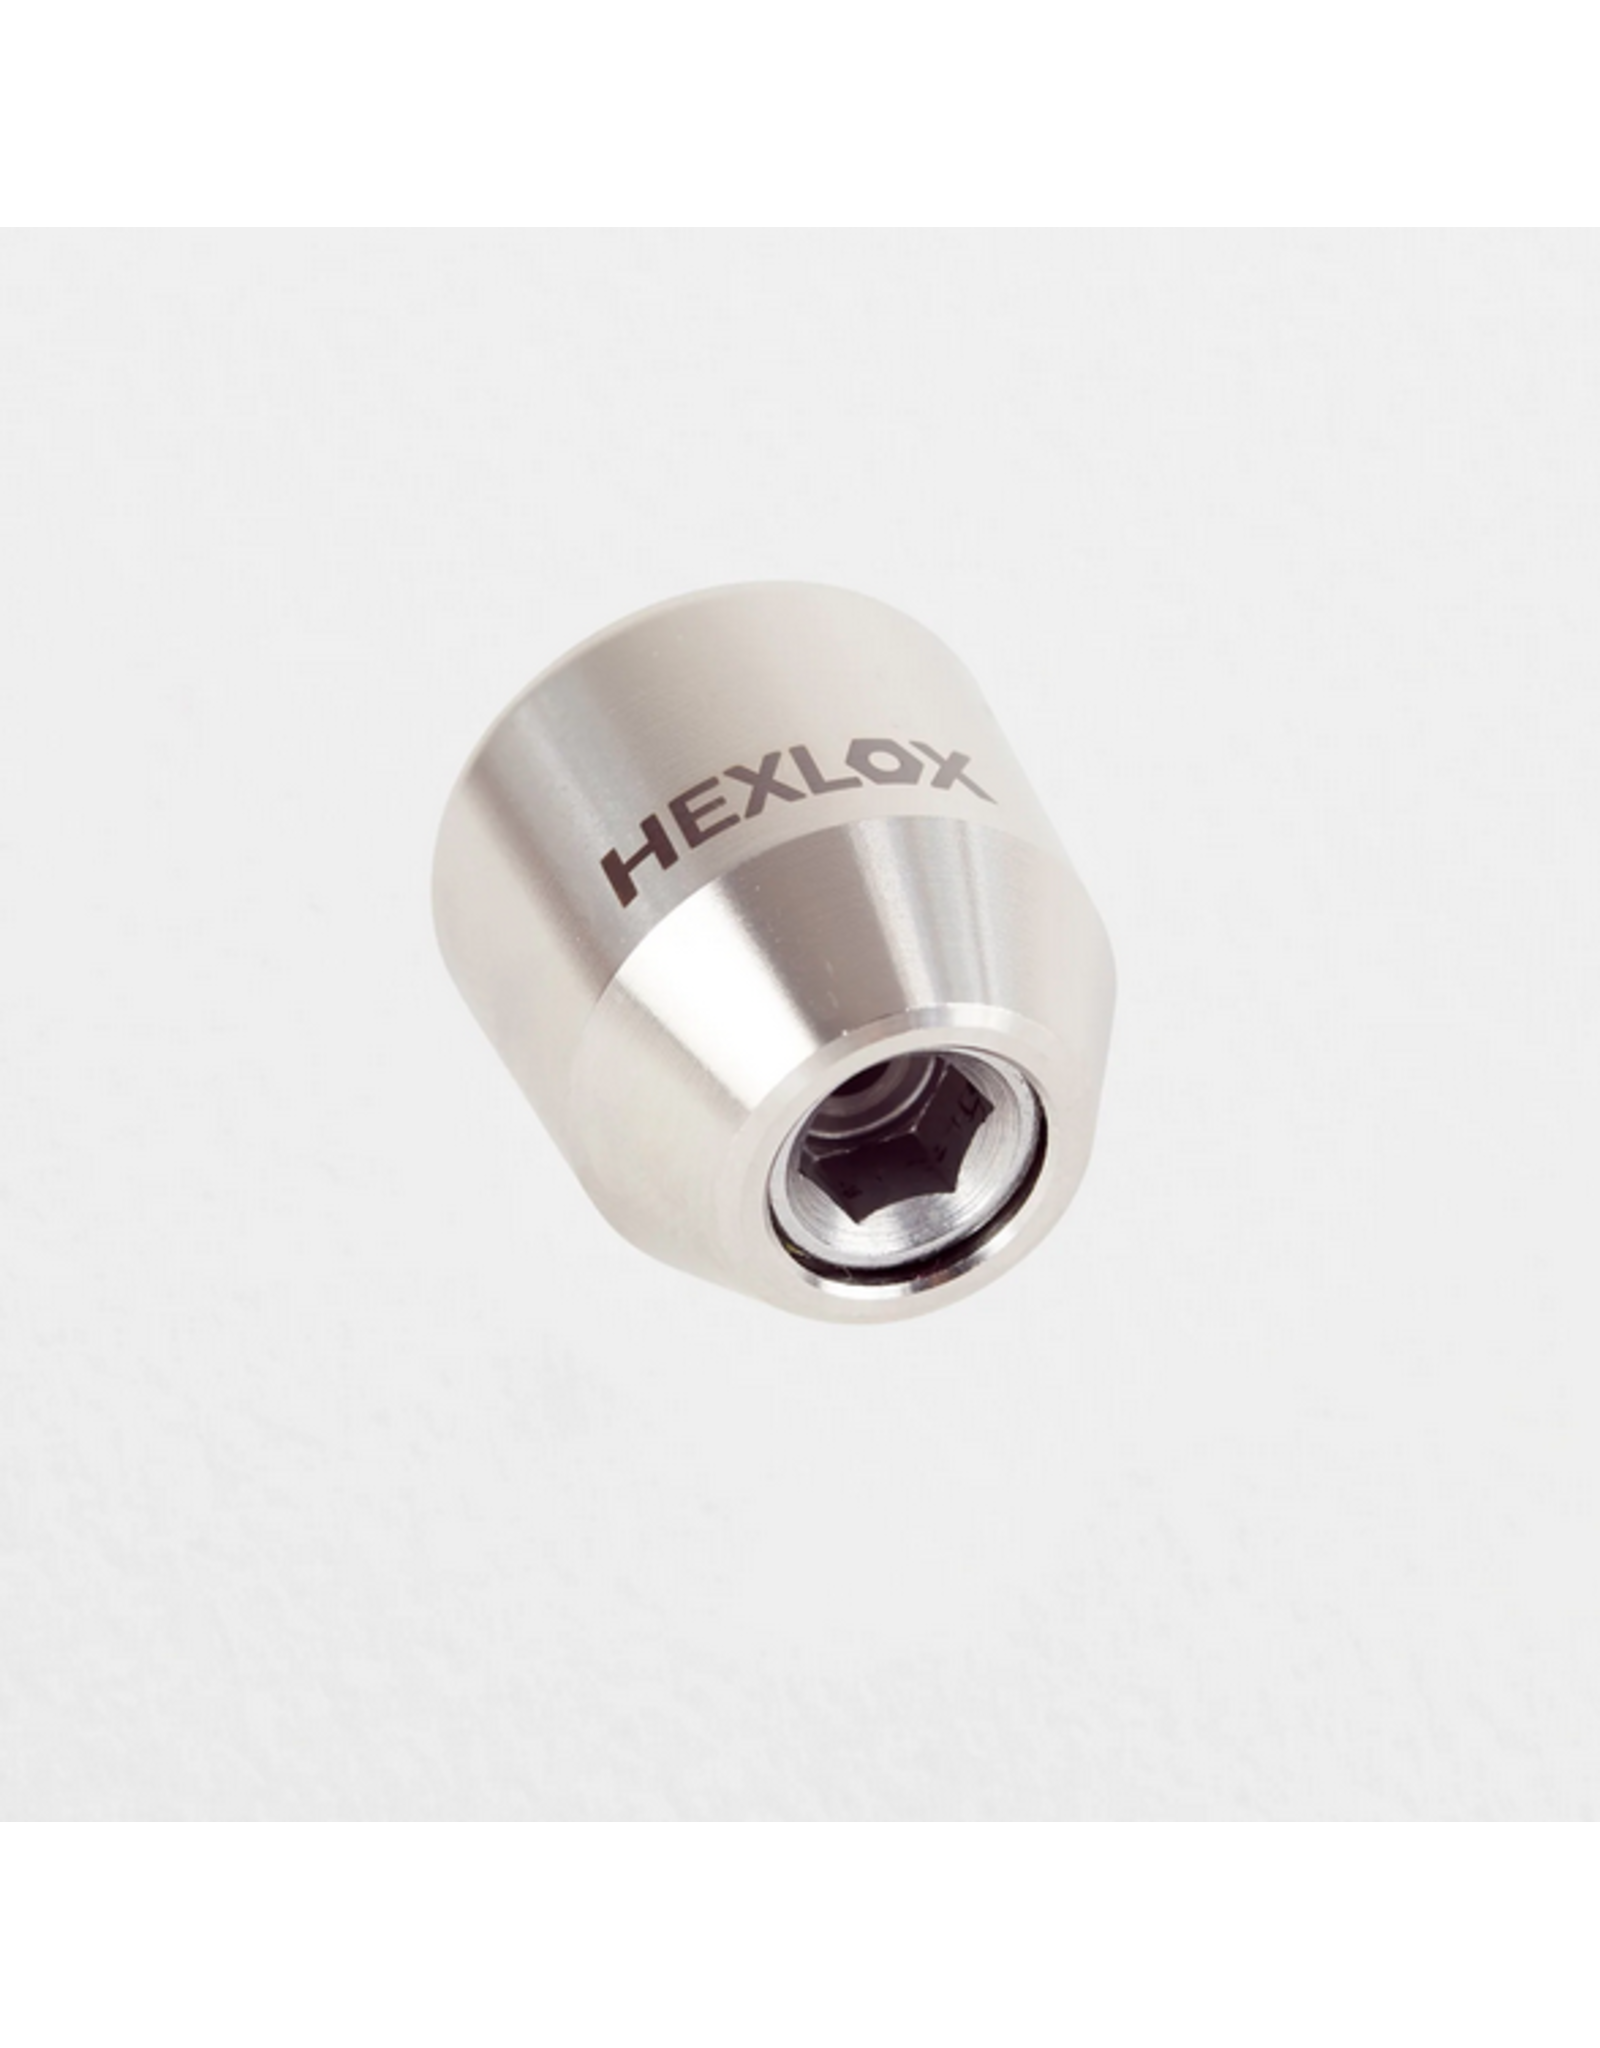 Hexlox Hexnut Axle Nut, M10 (Rear), Silver